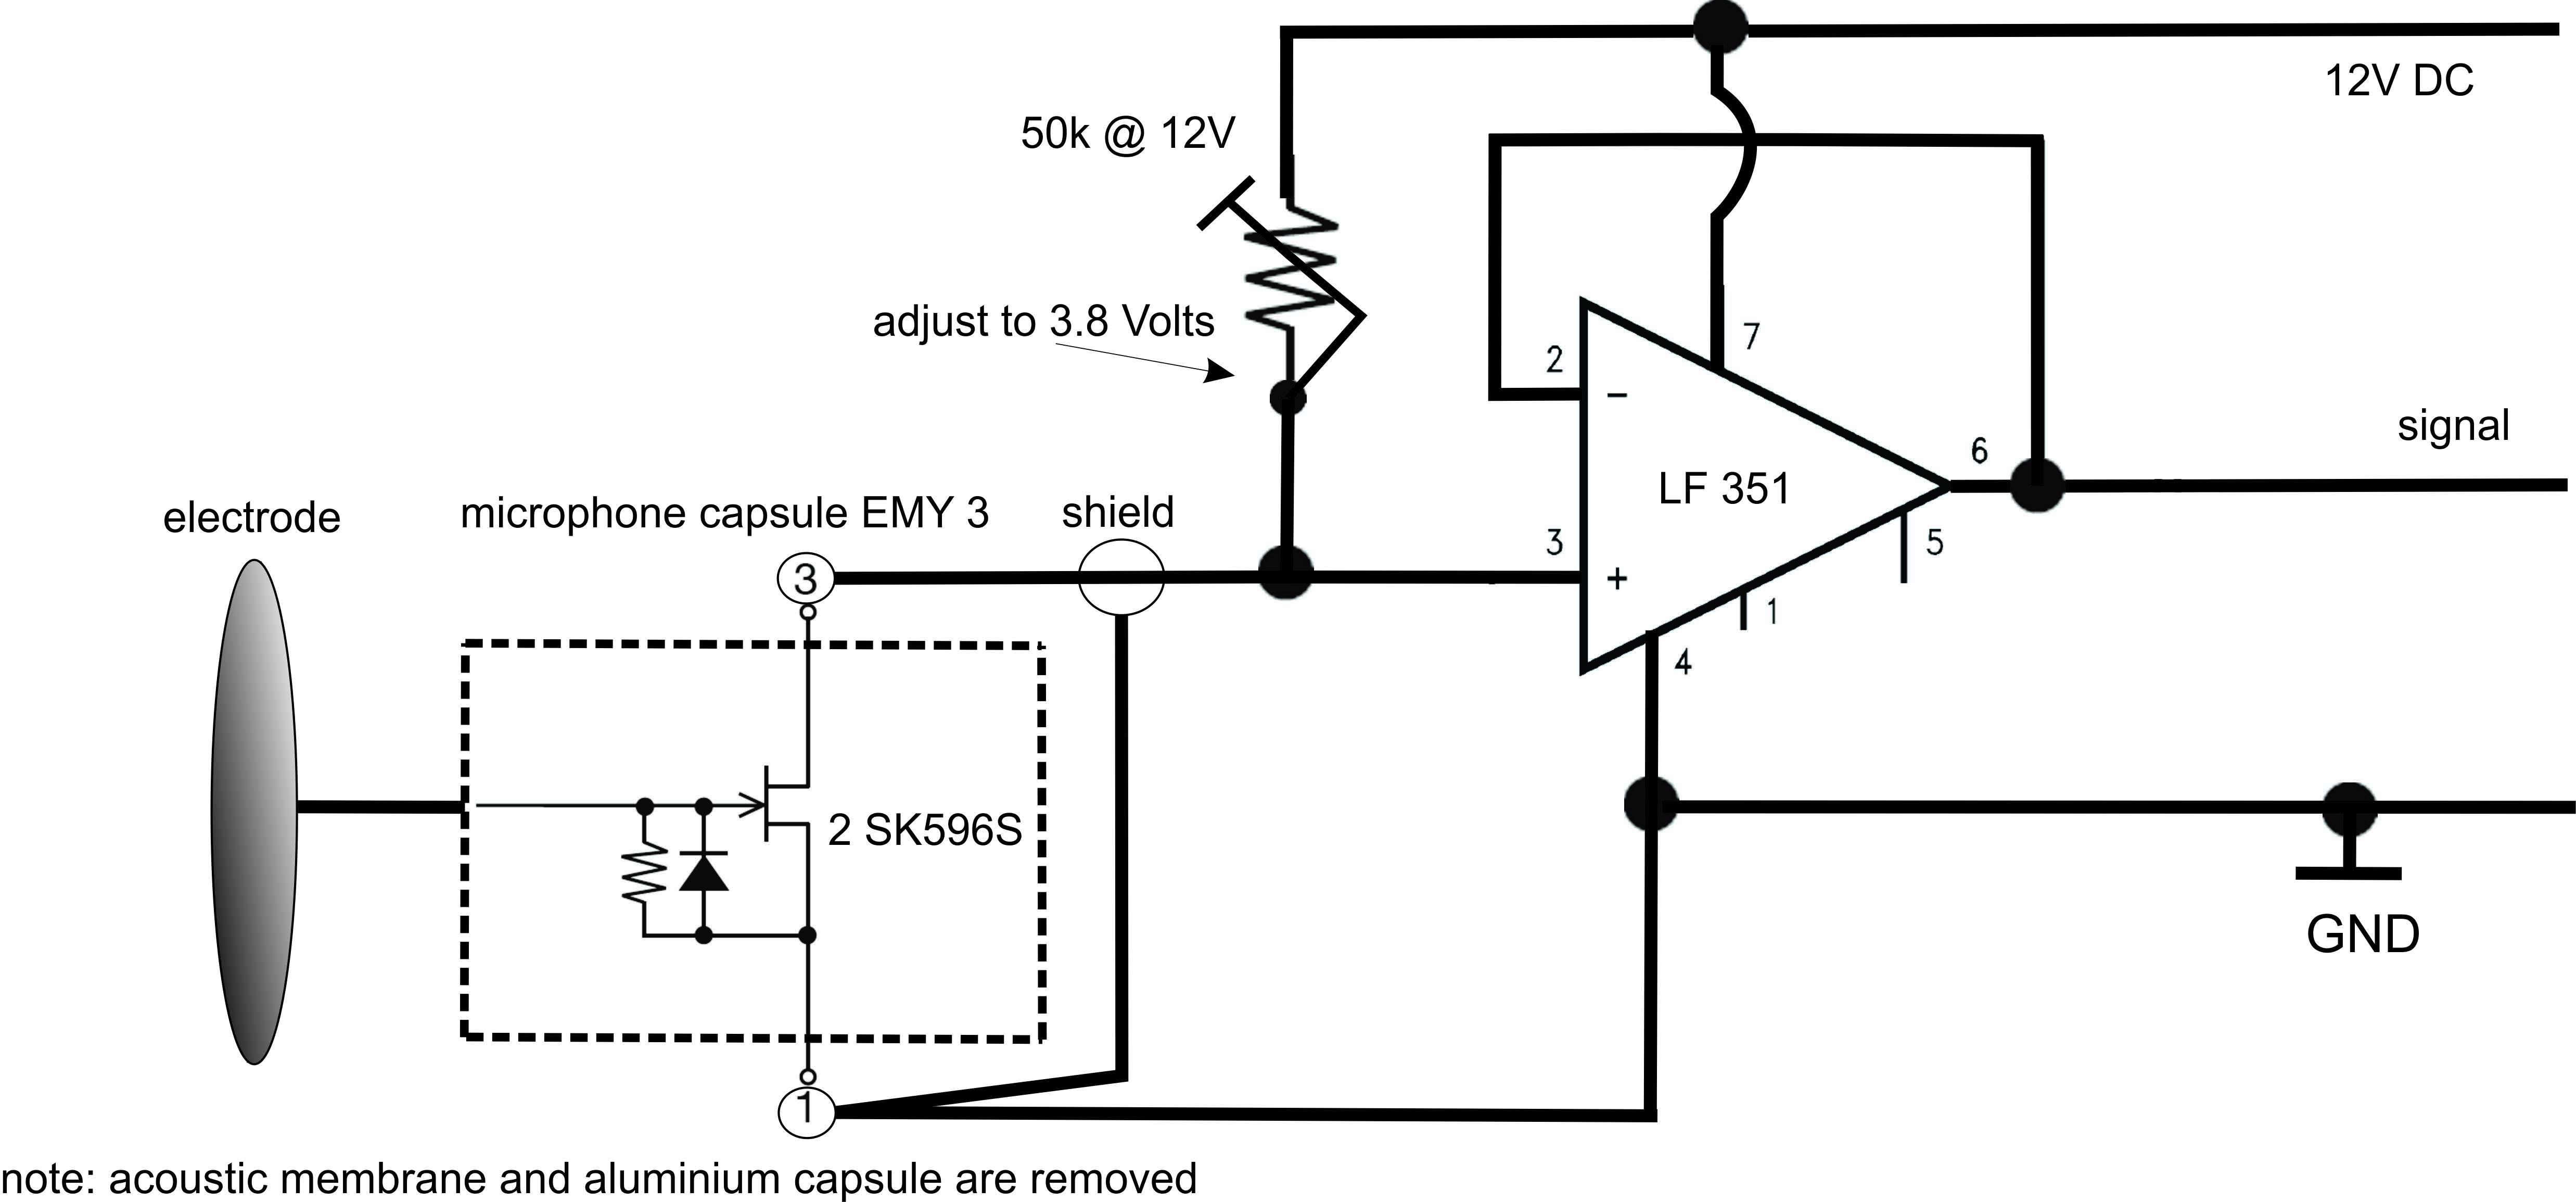  electrode circuit-1.jpg 